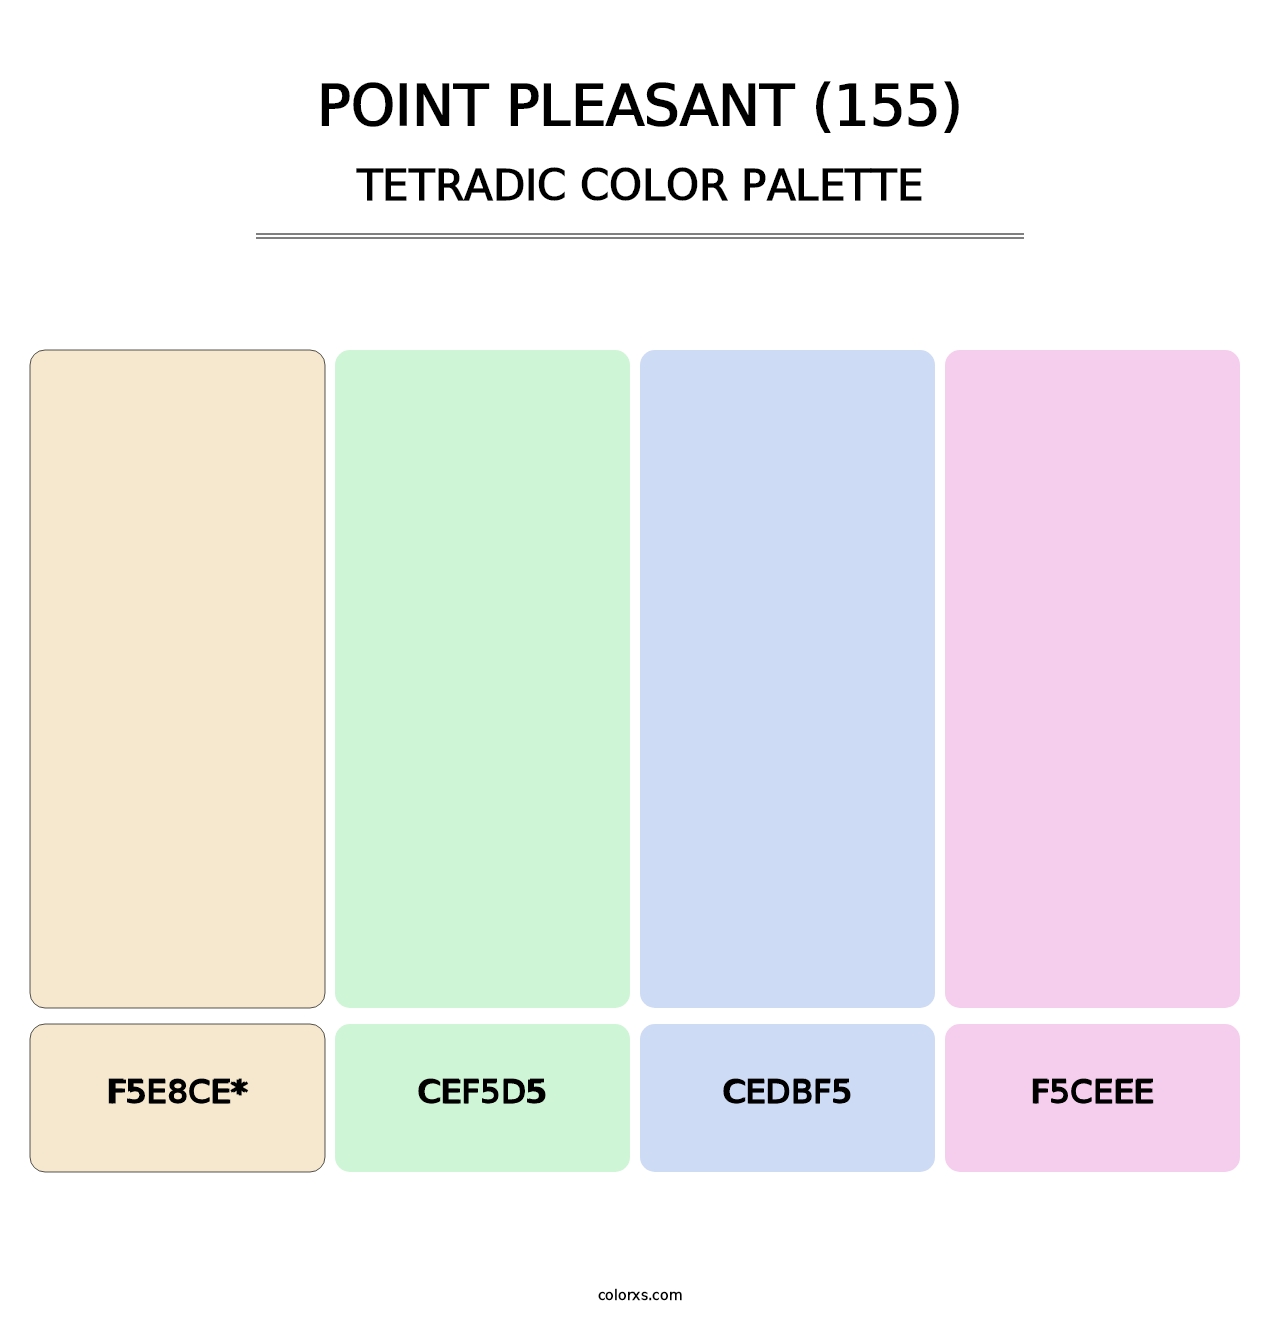 Point Pleasant (155) - Tetradic Color Palette